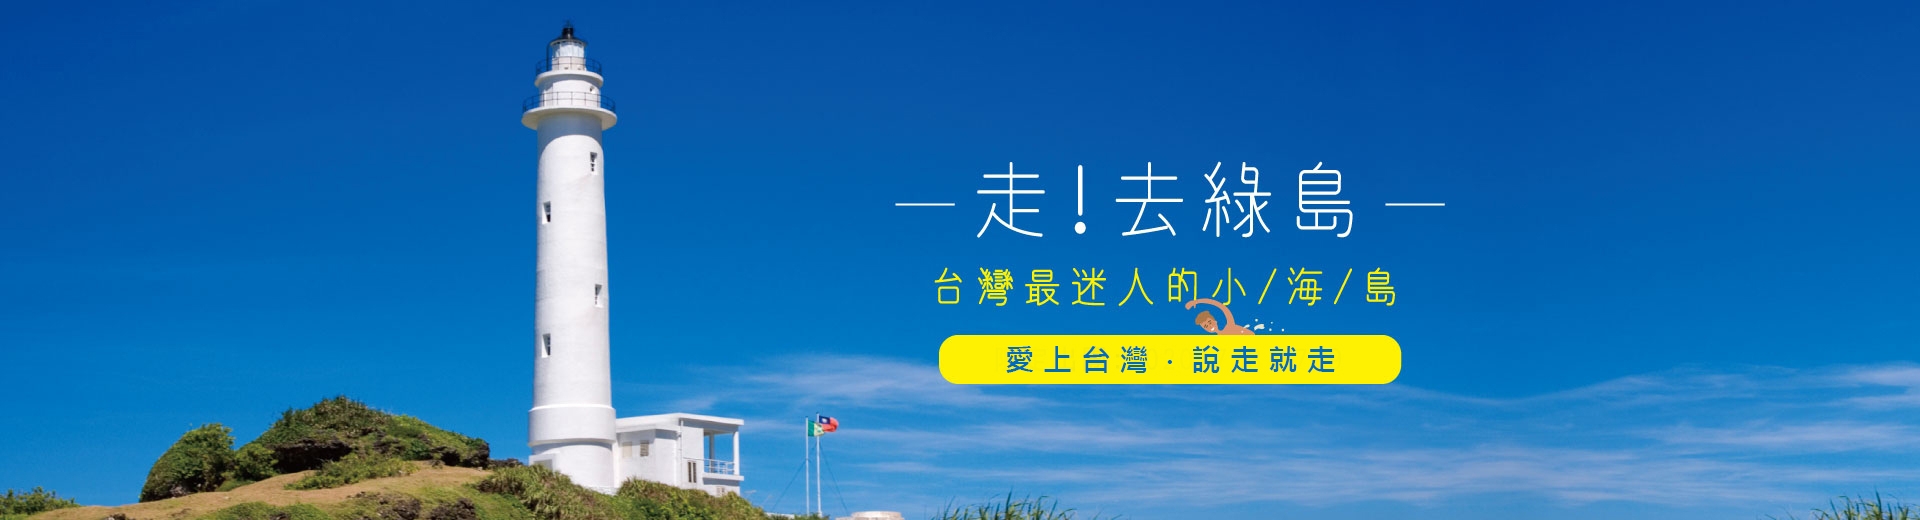 鈦美旅行社-台灣、台灣離島旅遊推薦